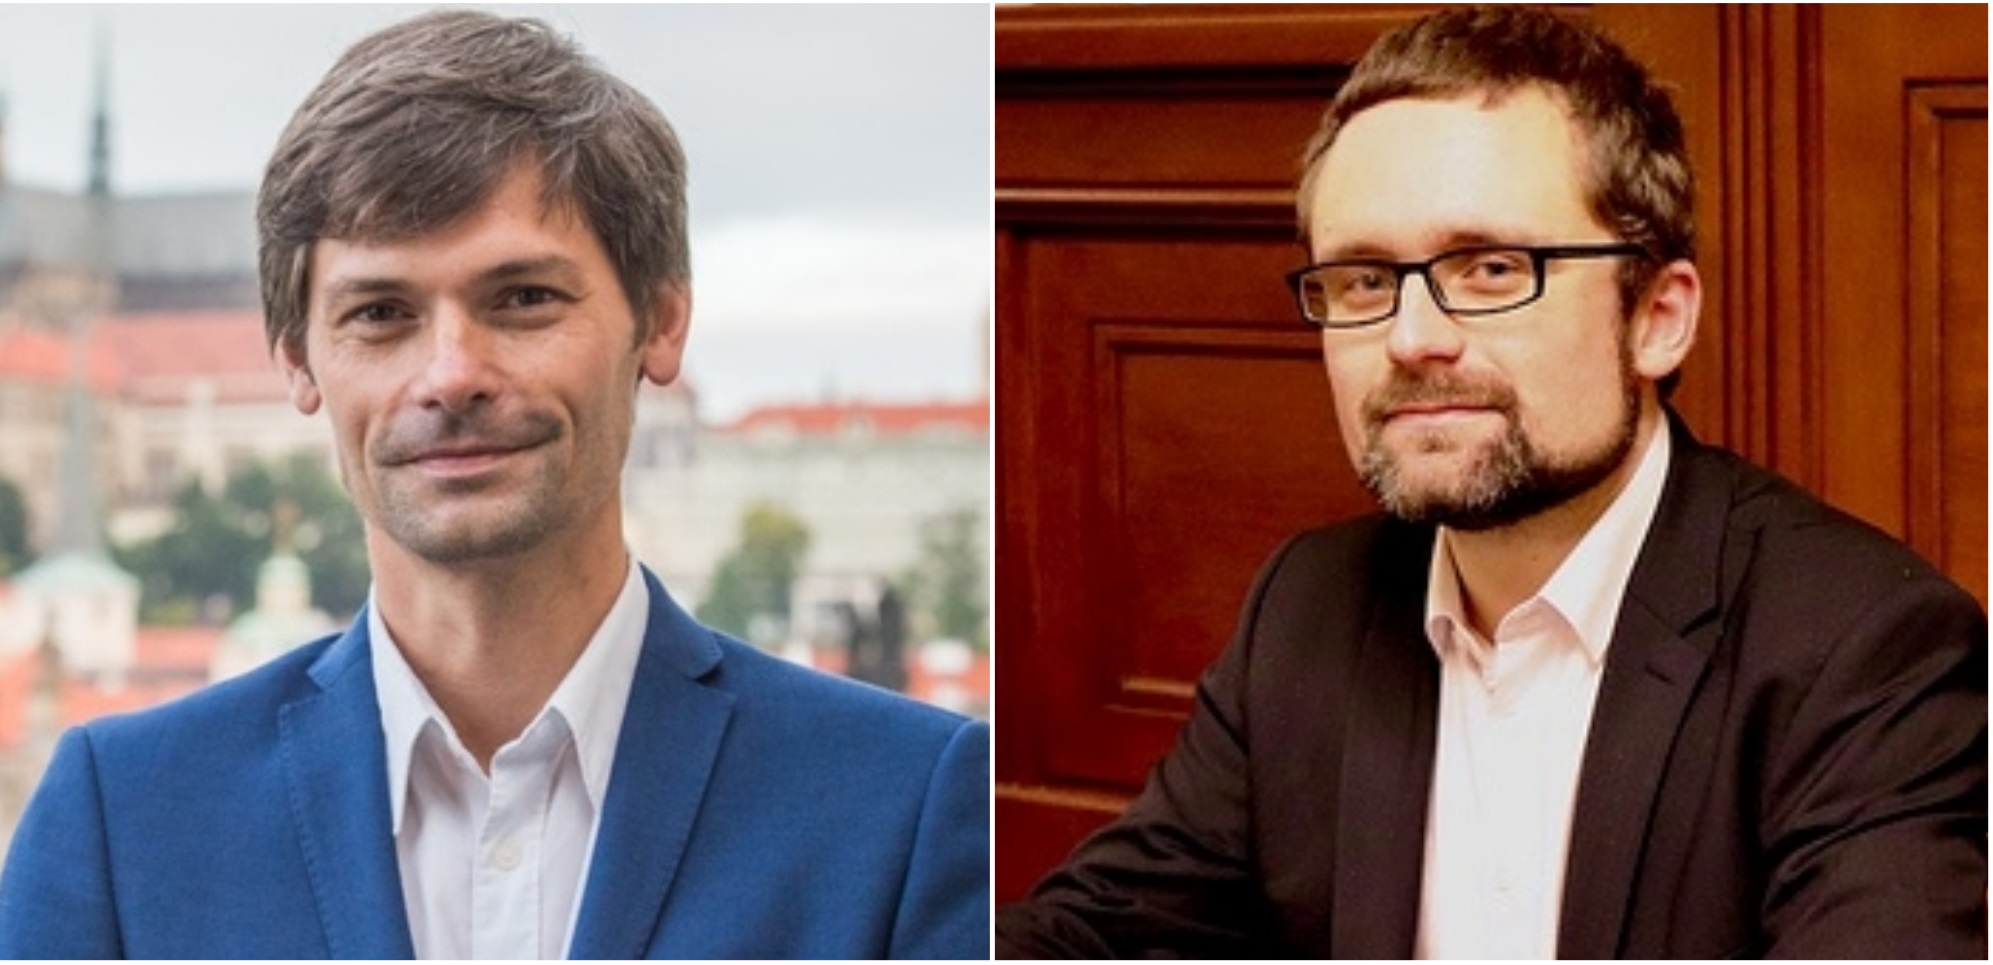 hilser-peksa-czech-lawmakers-transplant